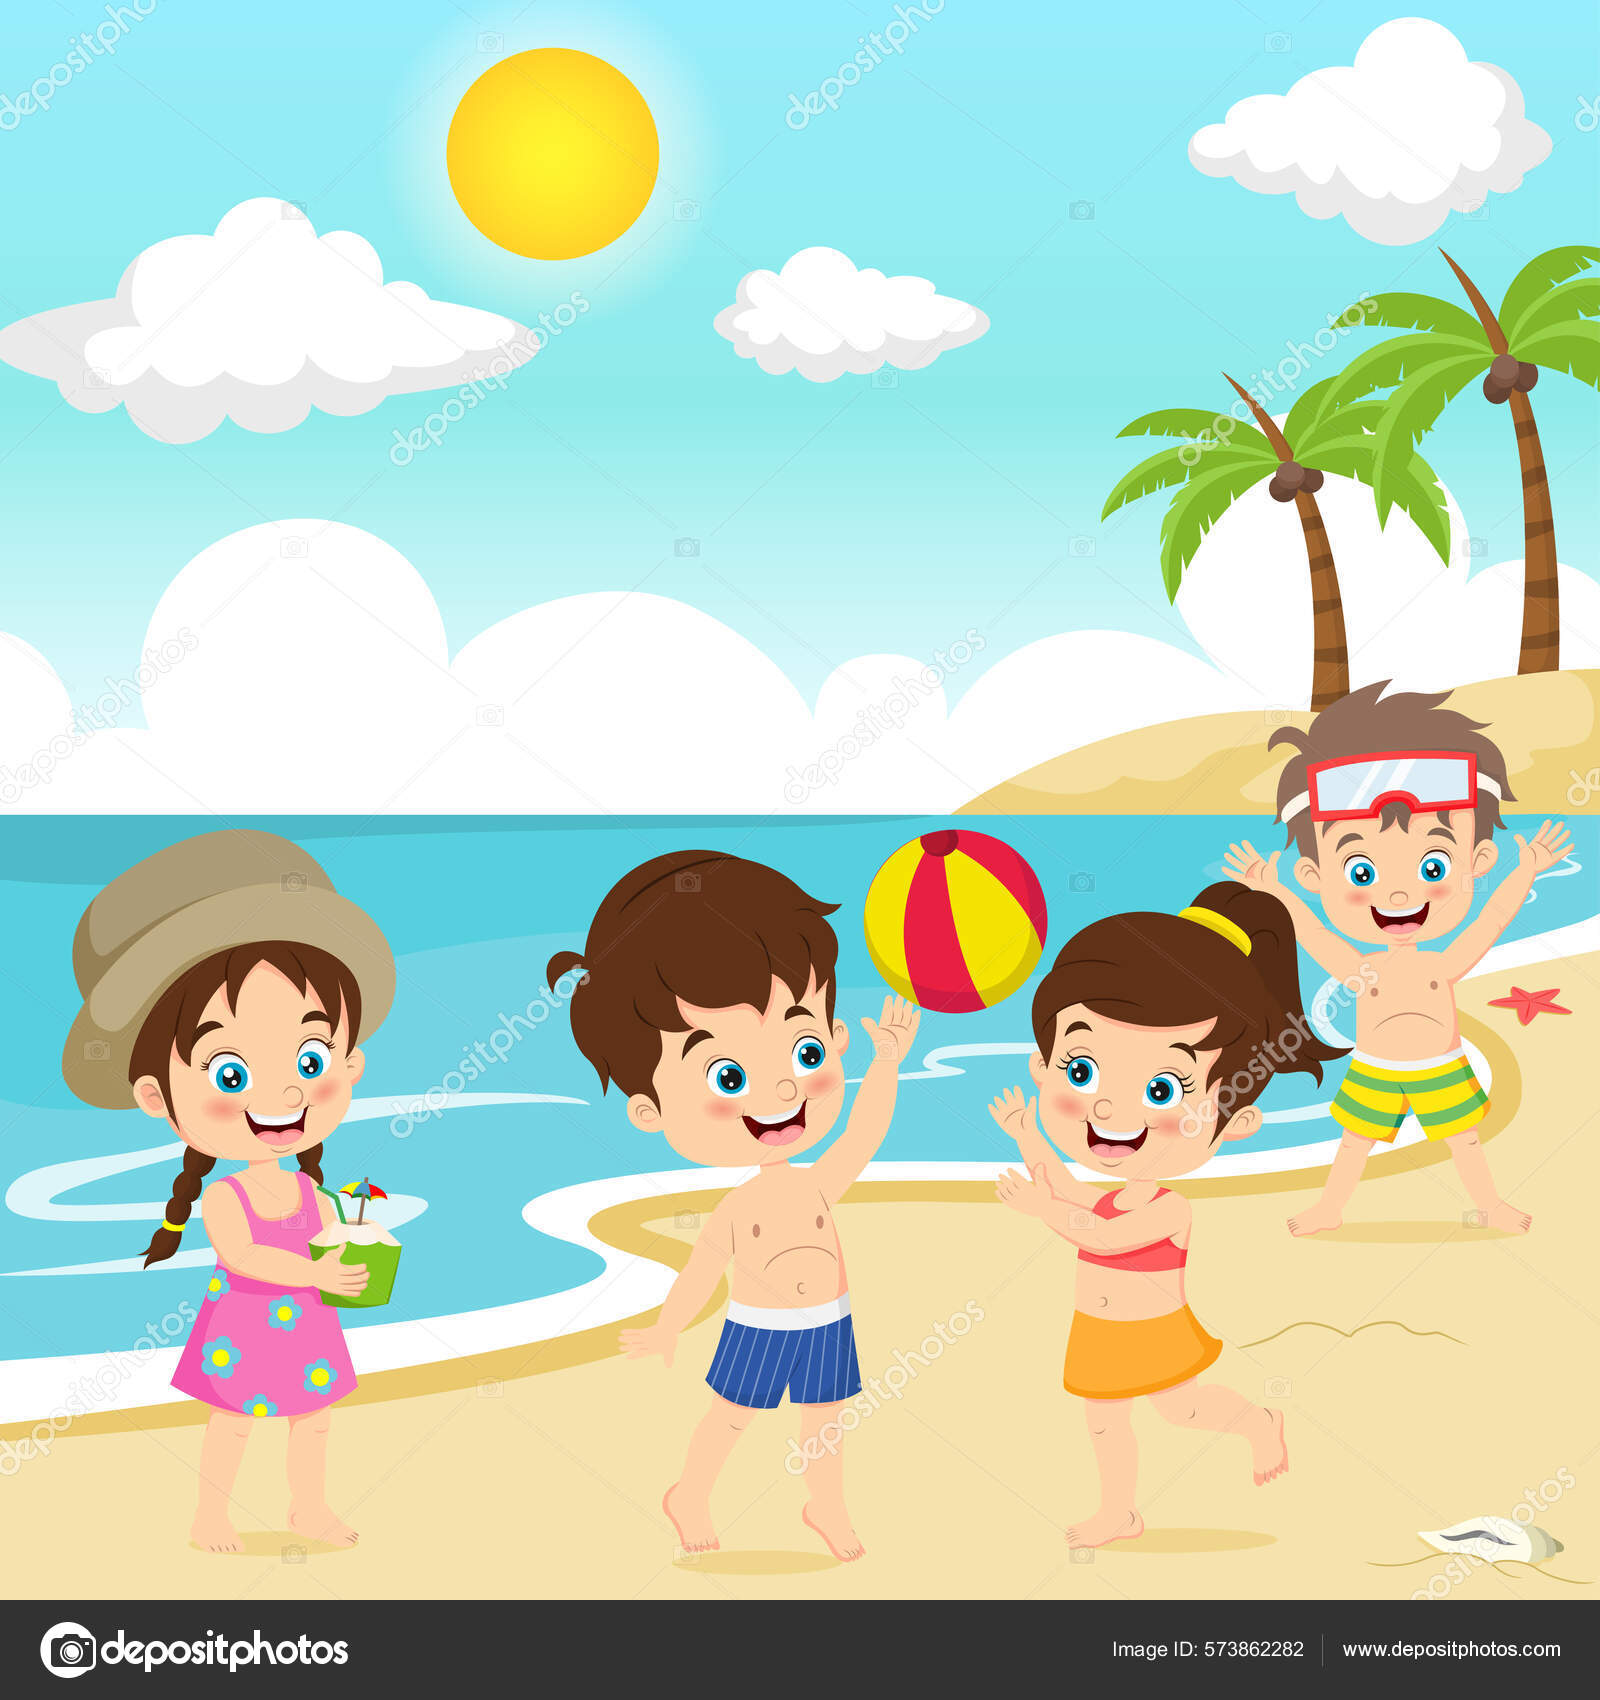 Imagem de crianças jogando bola na beira da praia.